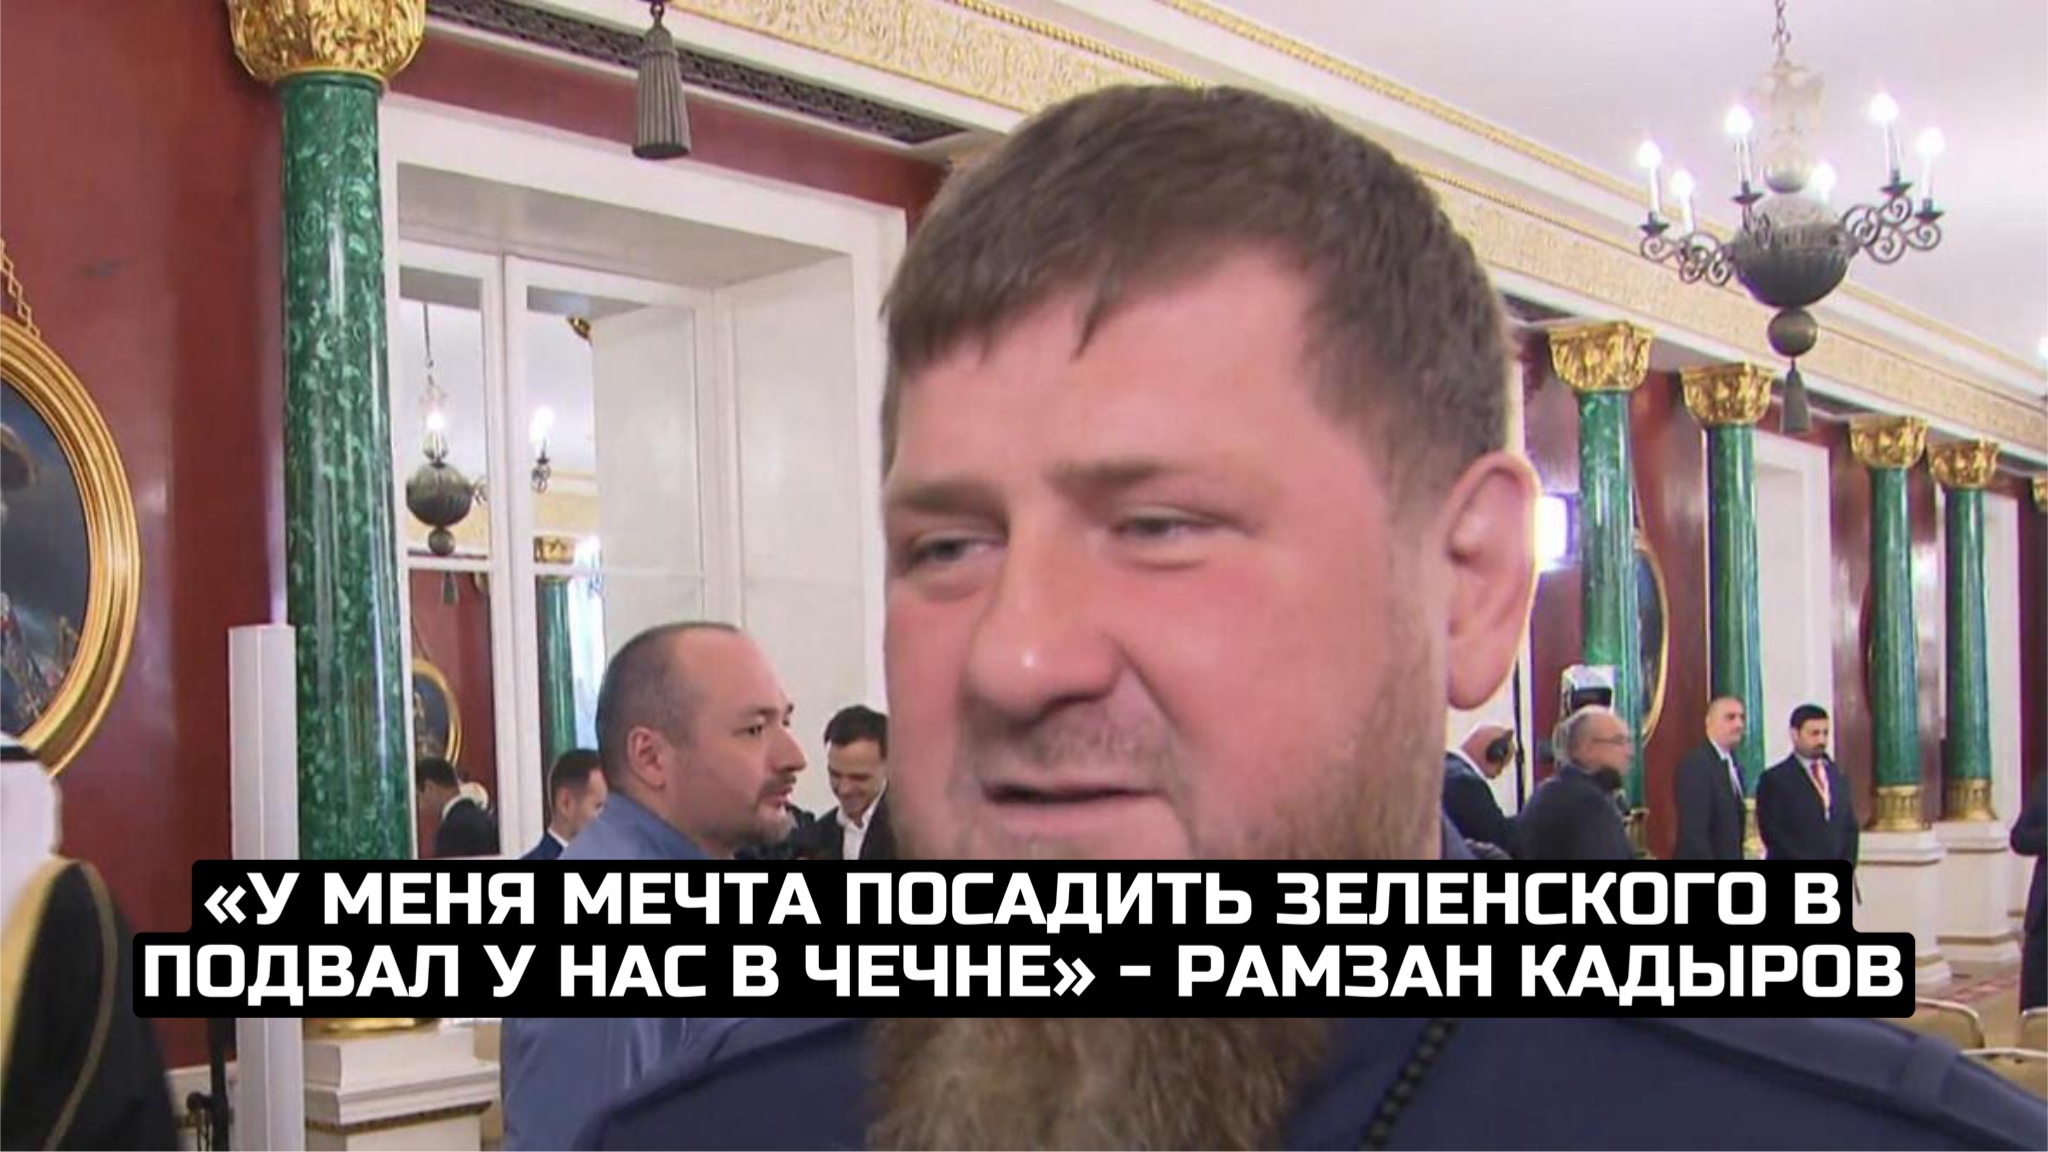 «У меня мечта посадить Зеленского в подвал у нас в Чечне» - Рамзан Кадыров